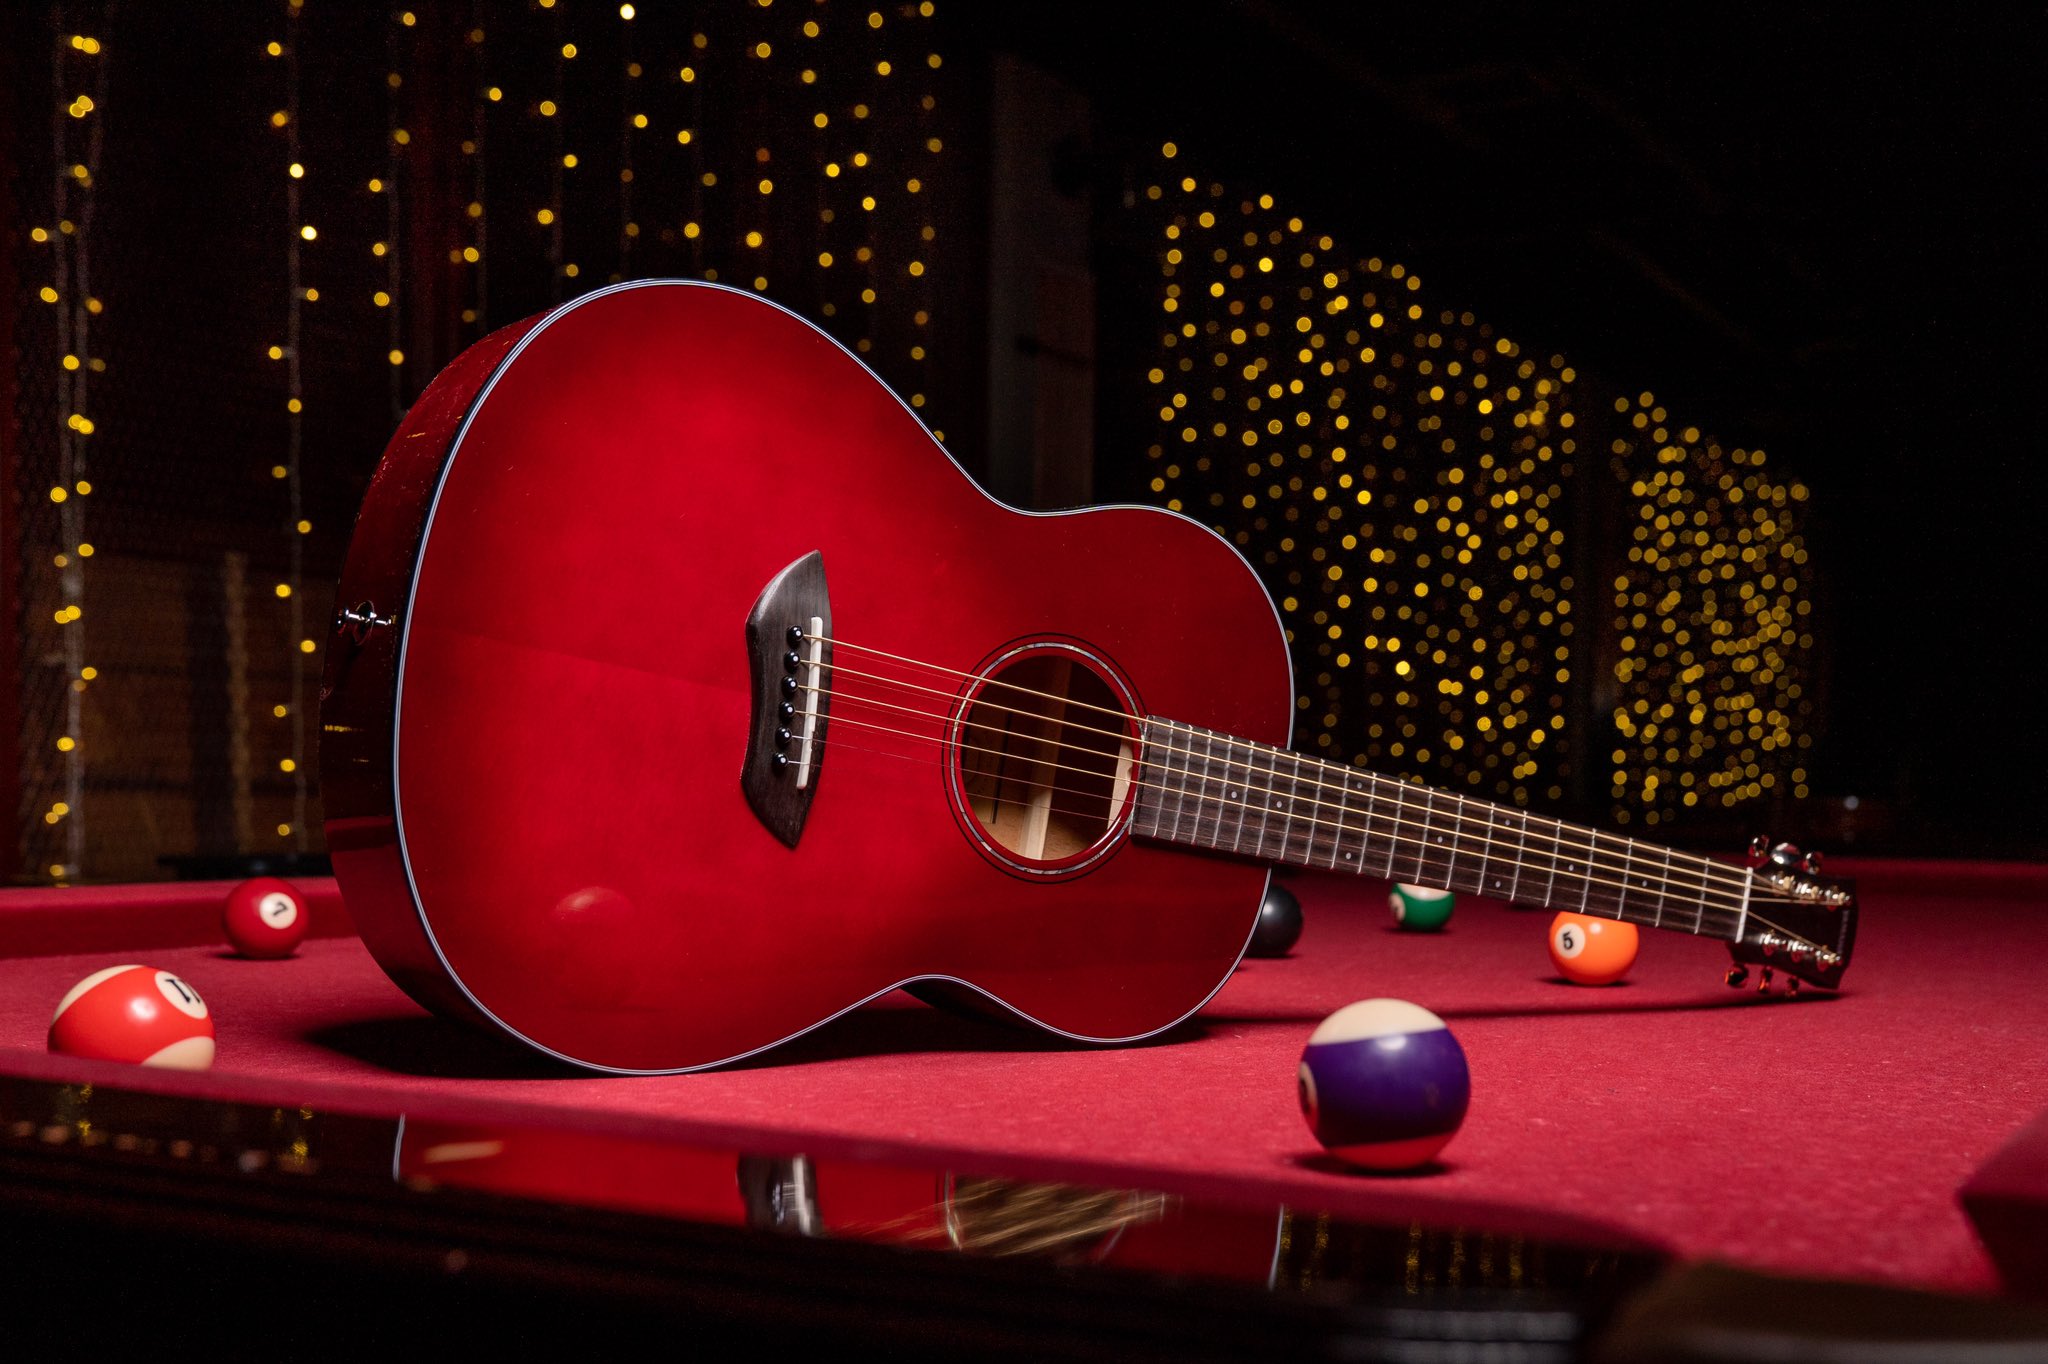 ヤマハアコースティックギタージャパン ヤマハのスモールサイズアコースティックギター Csf1m のカラーバリエーションが発表されました じゅわっとした綺麗な赤みのクリムゾンレッドバースト Crb と 木目が透けてかっこいいトランスルーセント